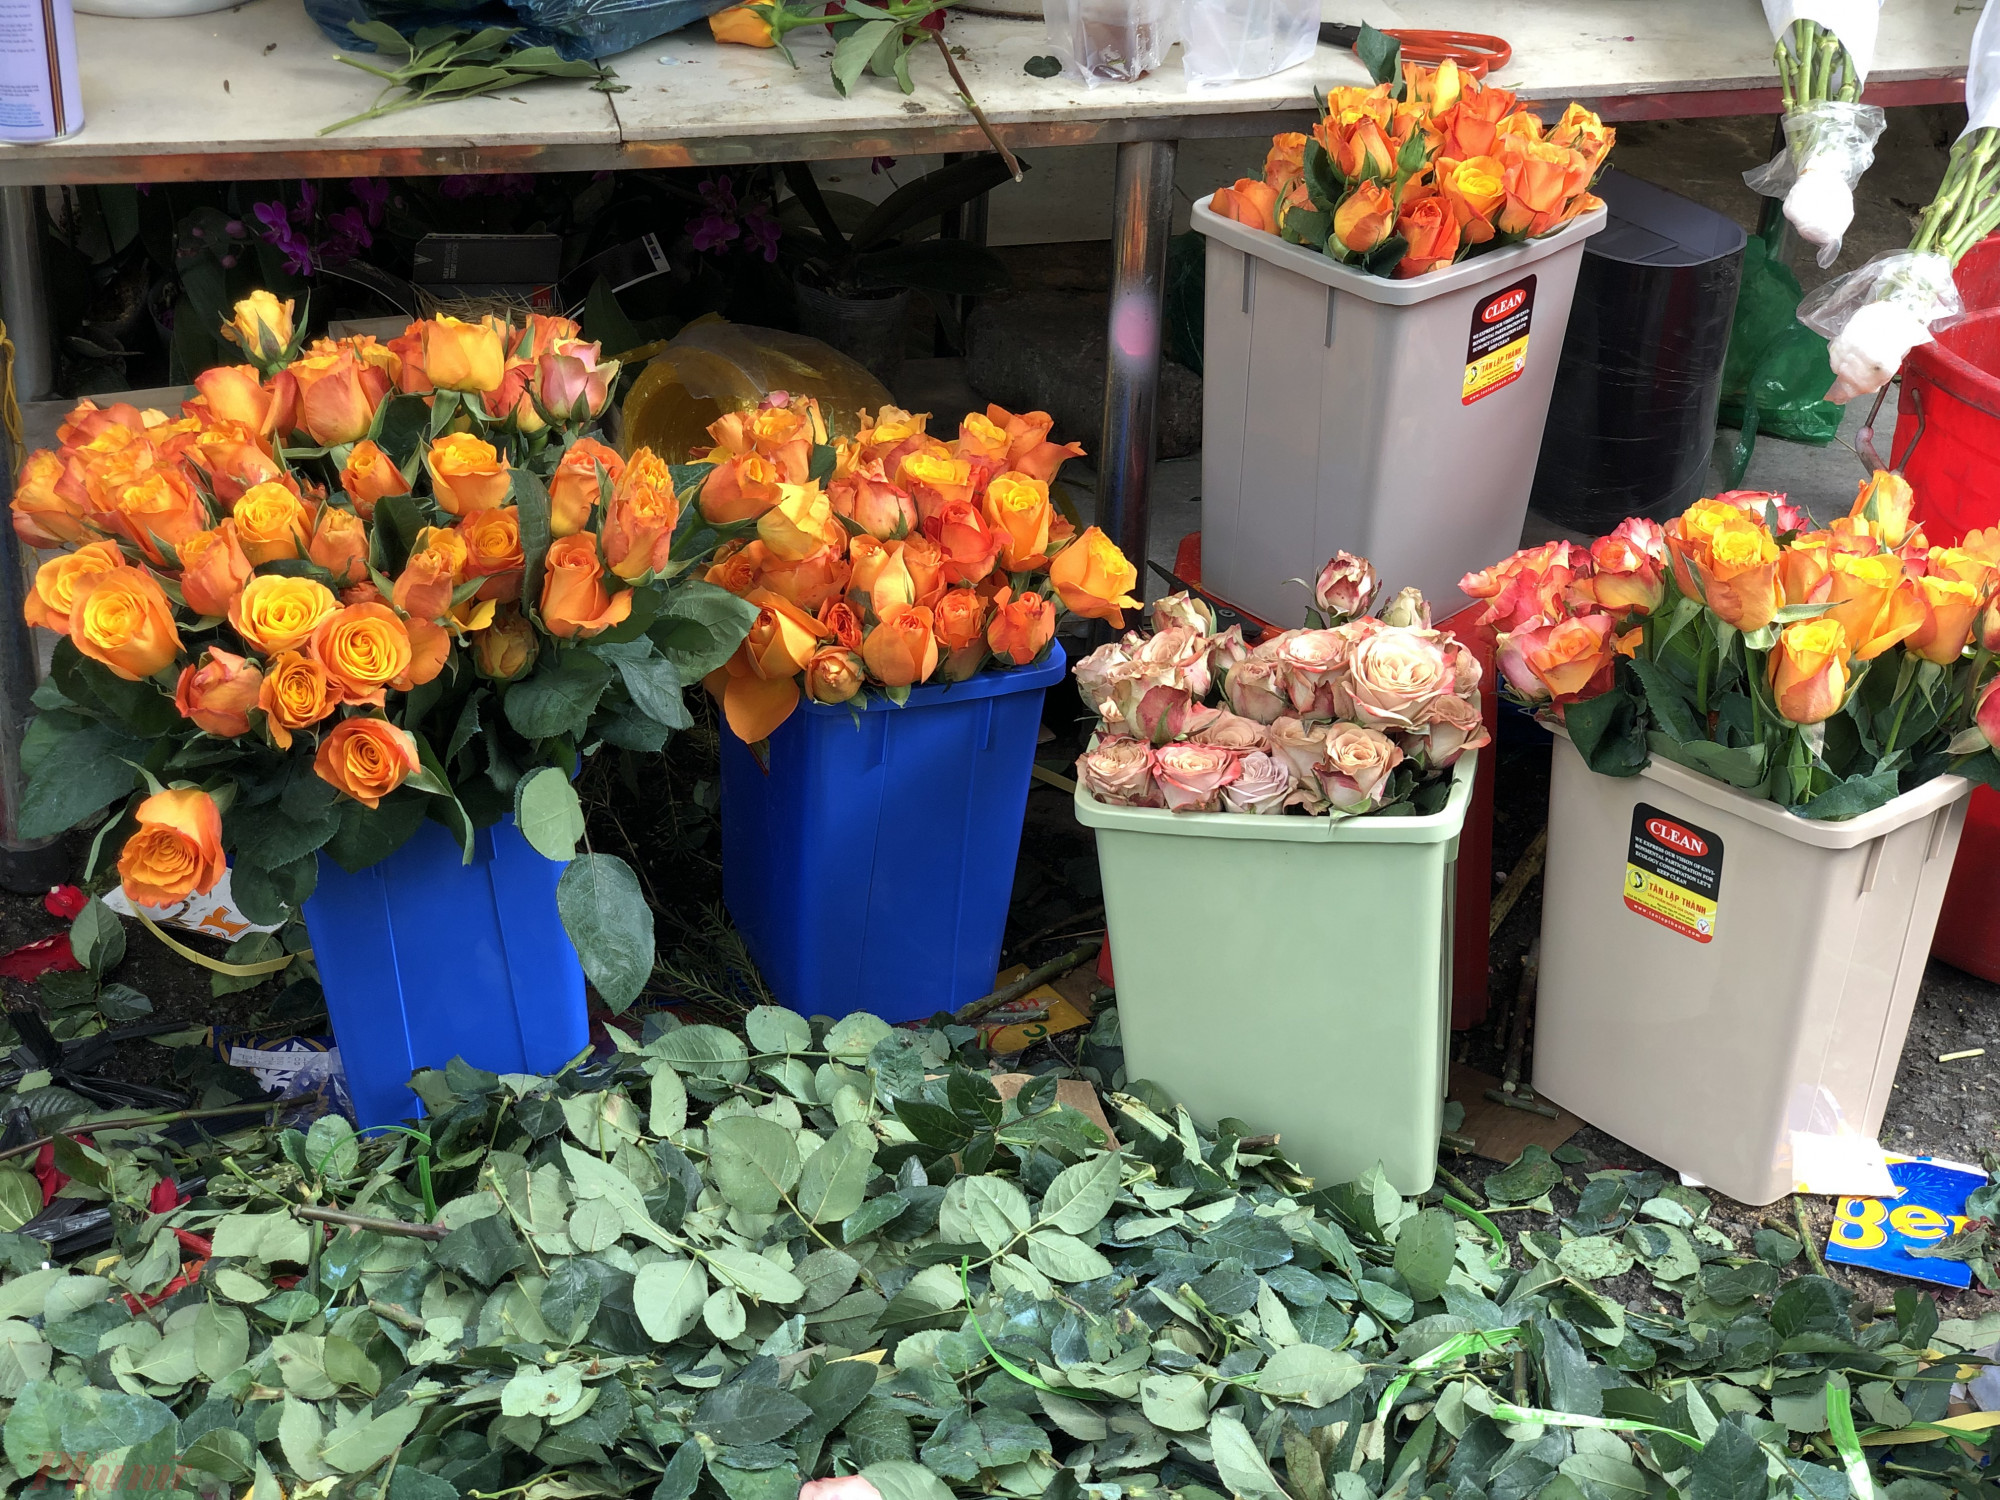 Hoa hồng đột biến màu cam, màu nâu nhạt từ 280.000 đồng/bó 30 bông nay tăng gần 600.000 đồng/bó